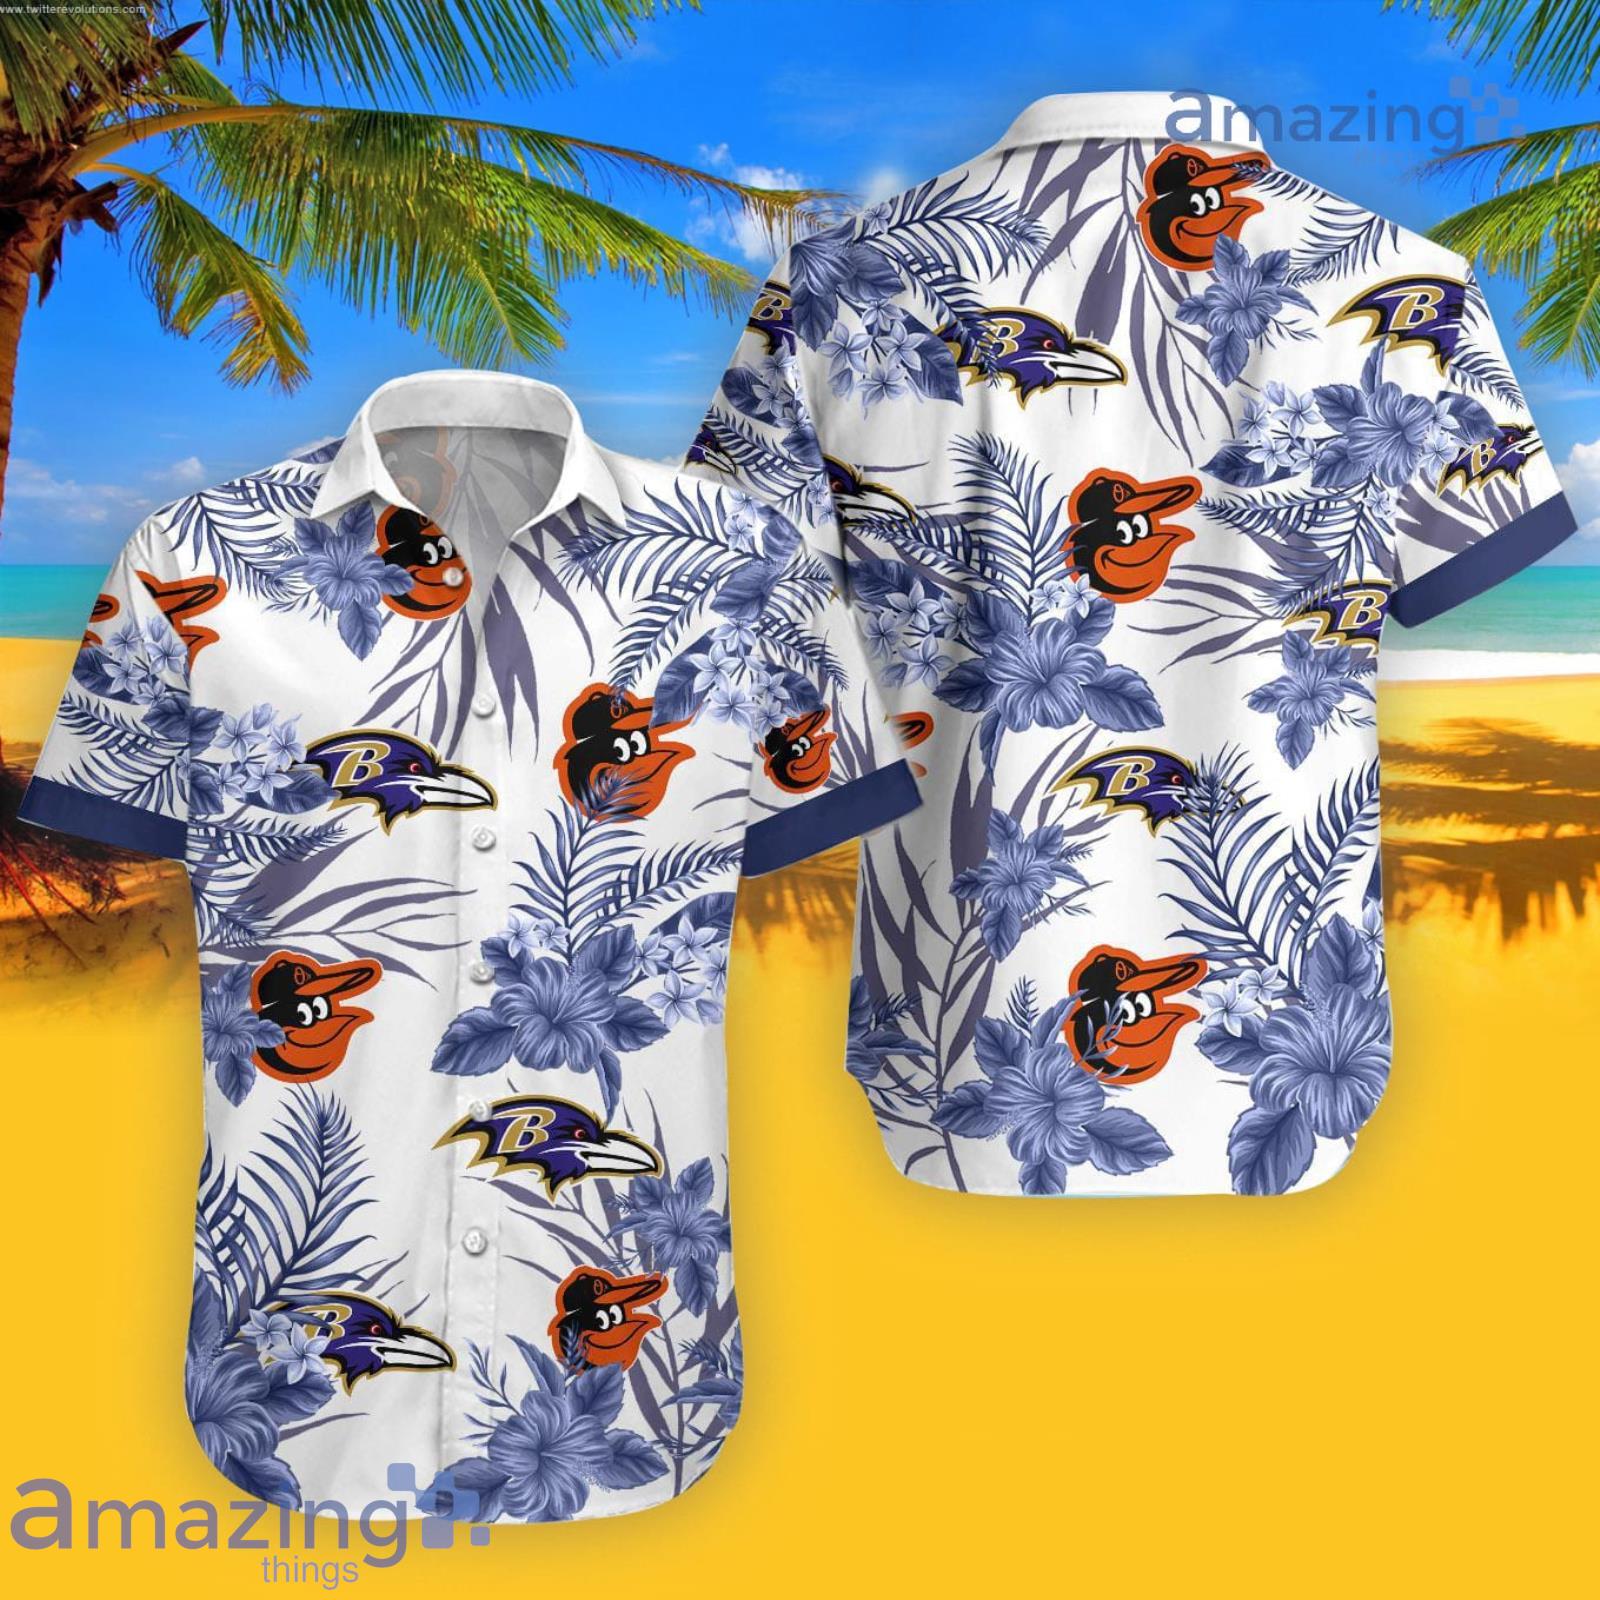 Ravens Orioles Hawaiian Shirt - Lelemoon